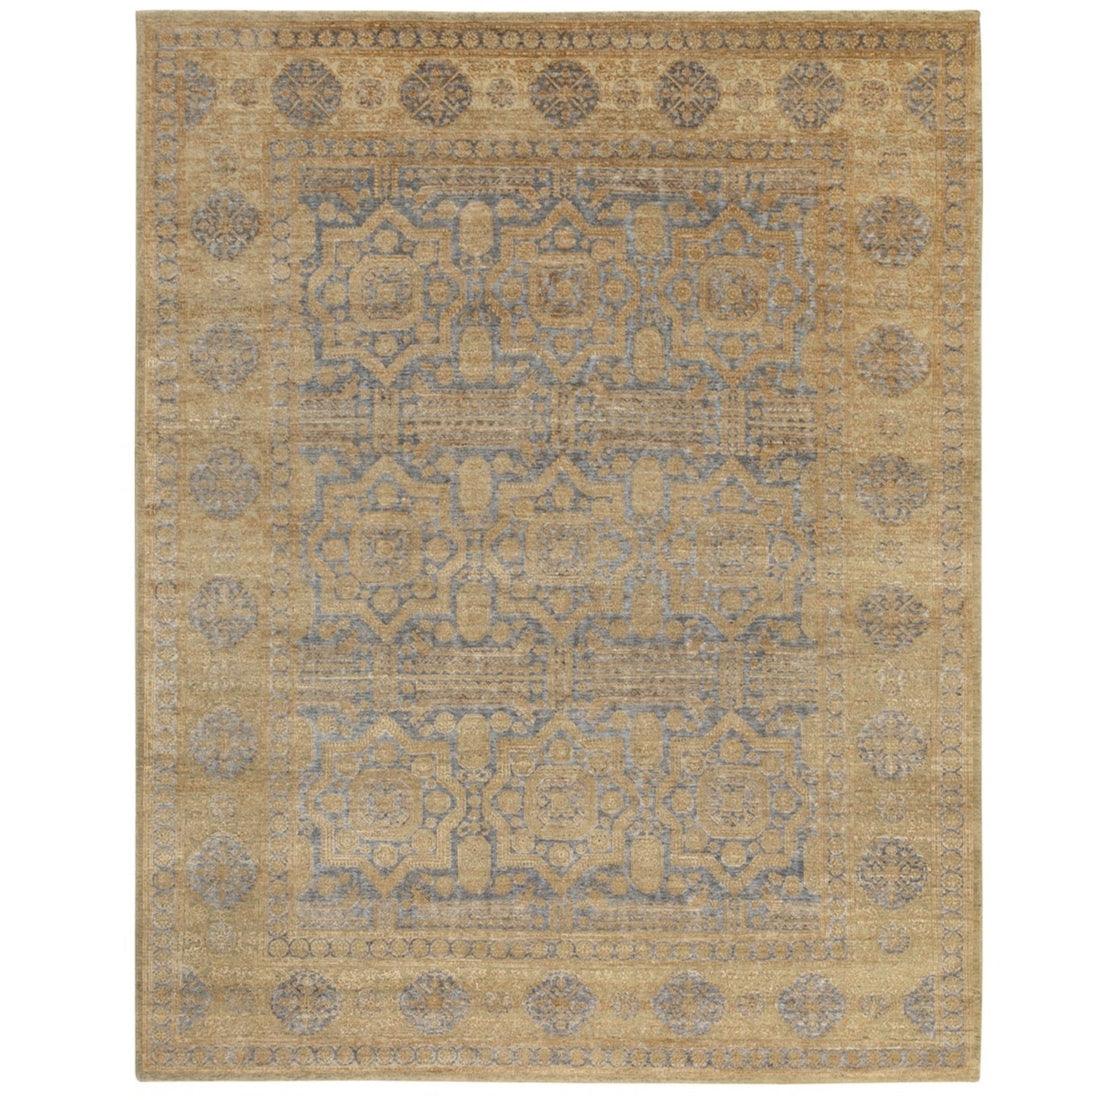 8'0" x 10'0" | Gold Mamluk | Wool and Silk | 23049